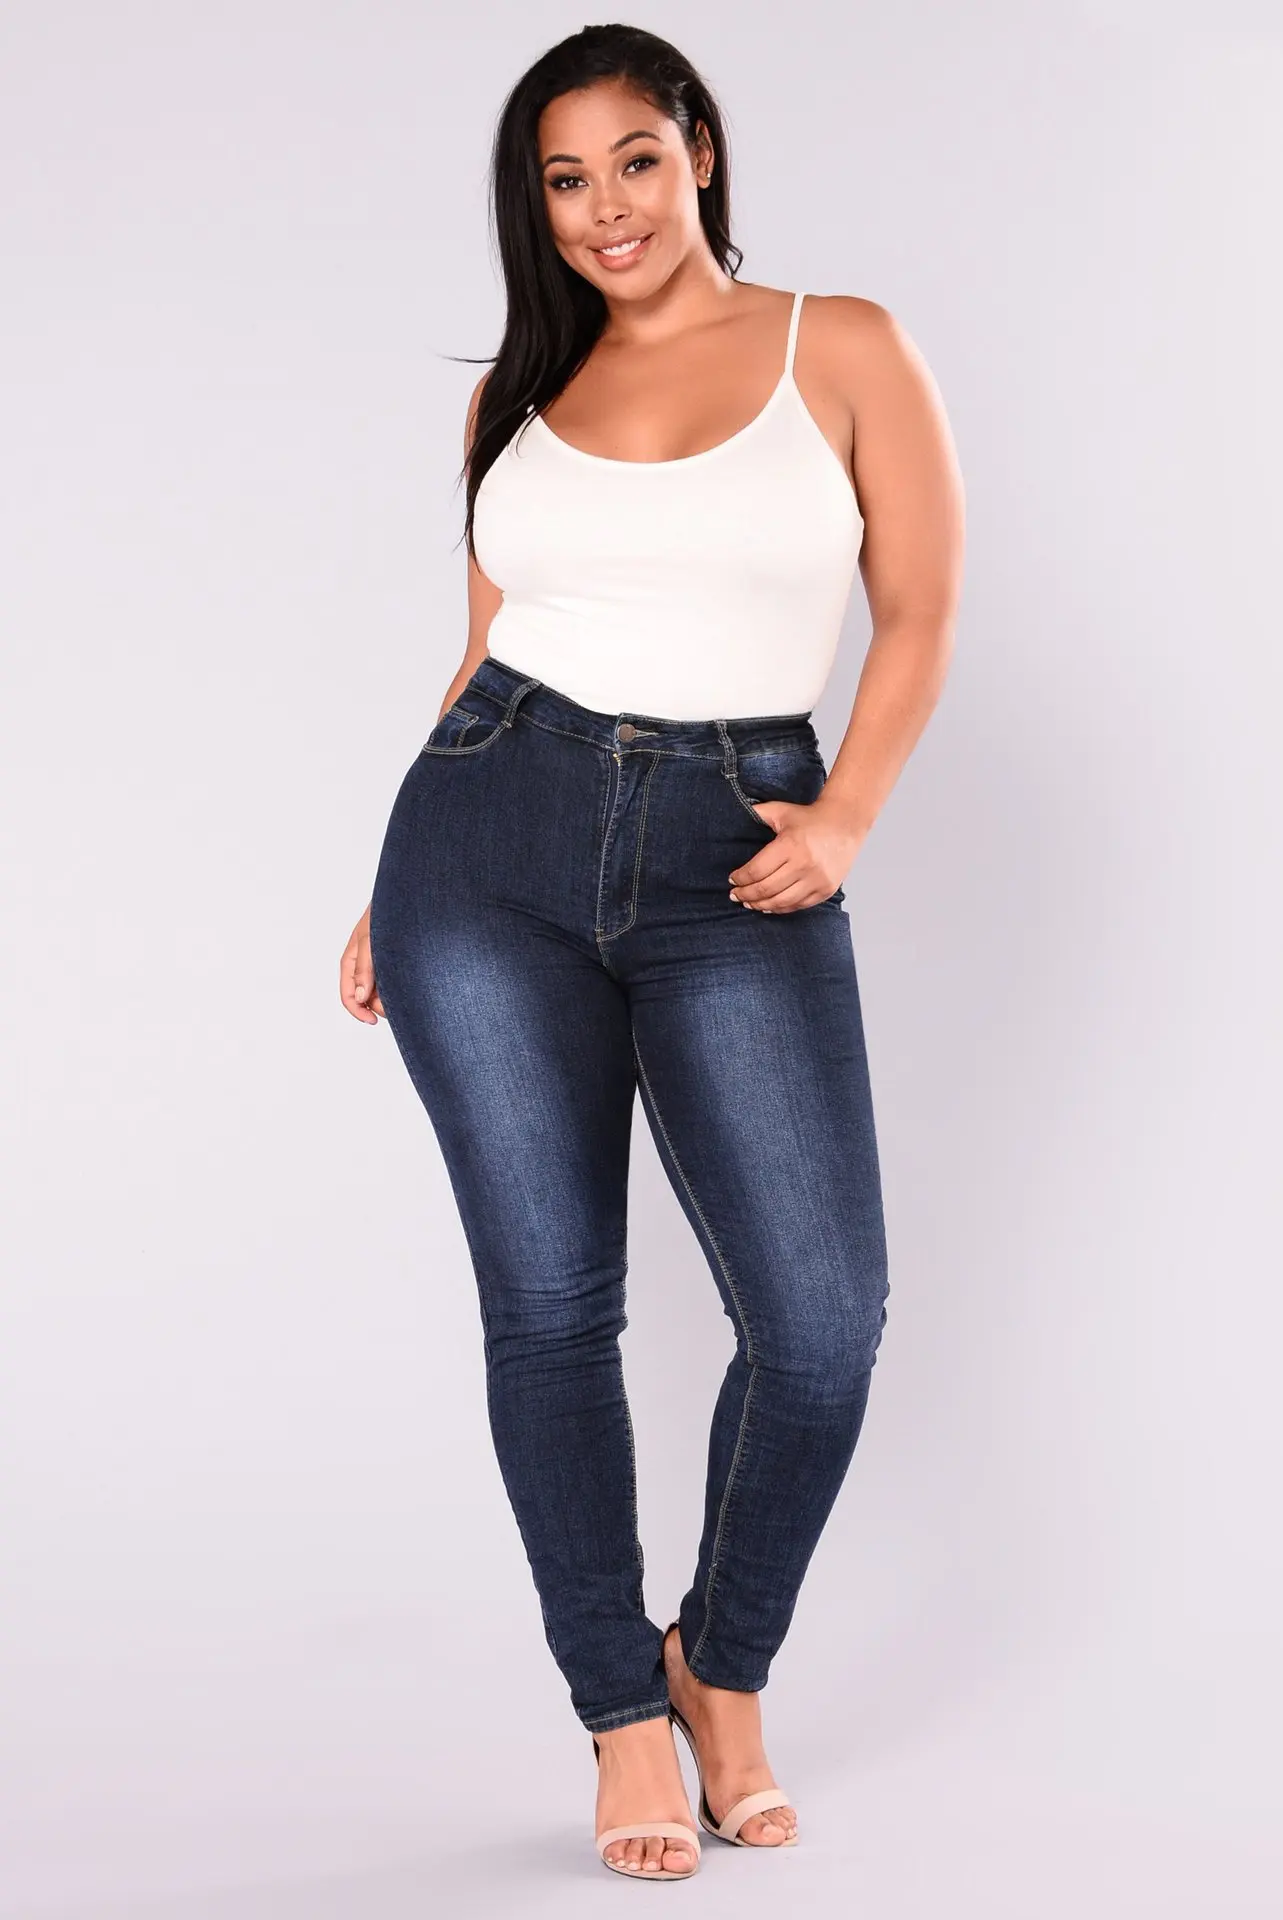 Lguc. H классические джинсы большого размера, женские Стрейчевые джинсовые штаны с эффектом пуш-ап, джинсы для мам большого размера, женские брюки размера плюс 5XL, 6XL, 7XL